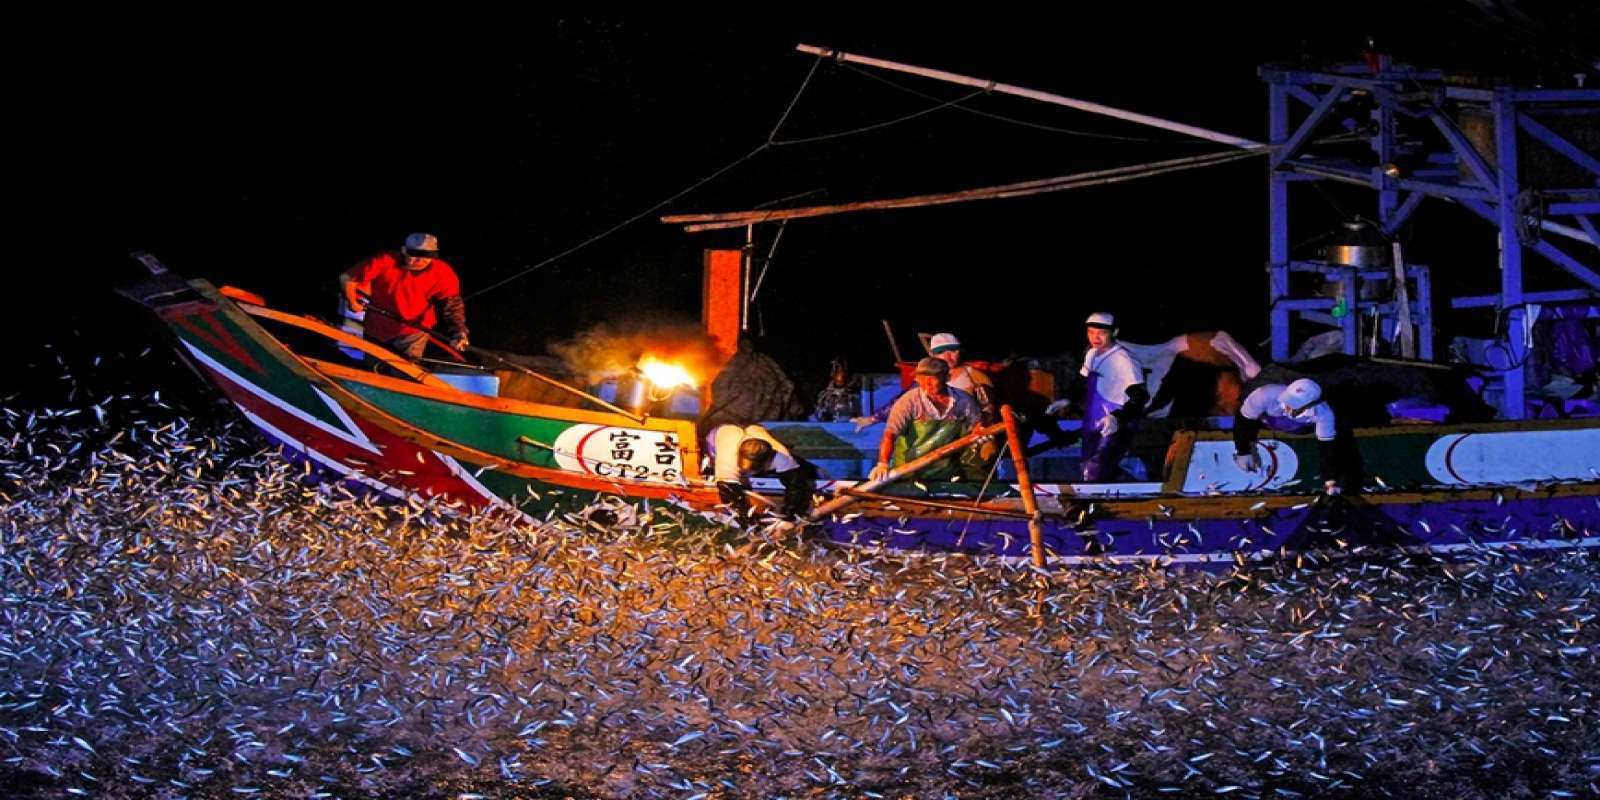 Thuyền đánh cá bằng lửa cuối cùng ở Đài Loan - 1